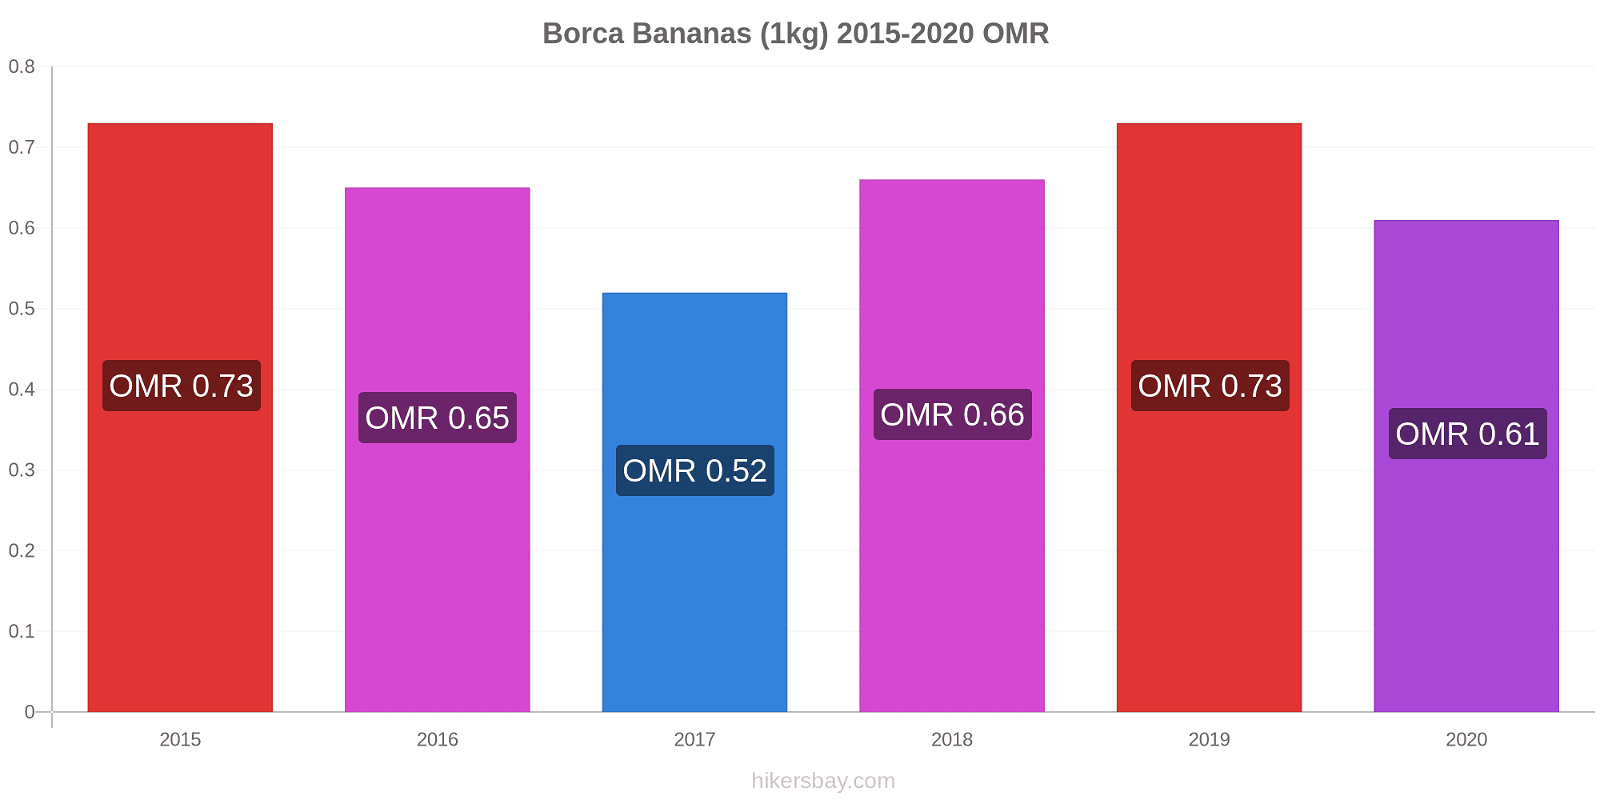 Borca variação de preço Banana (1kg) hikersbay.com